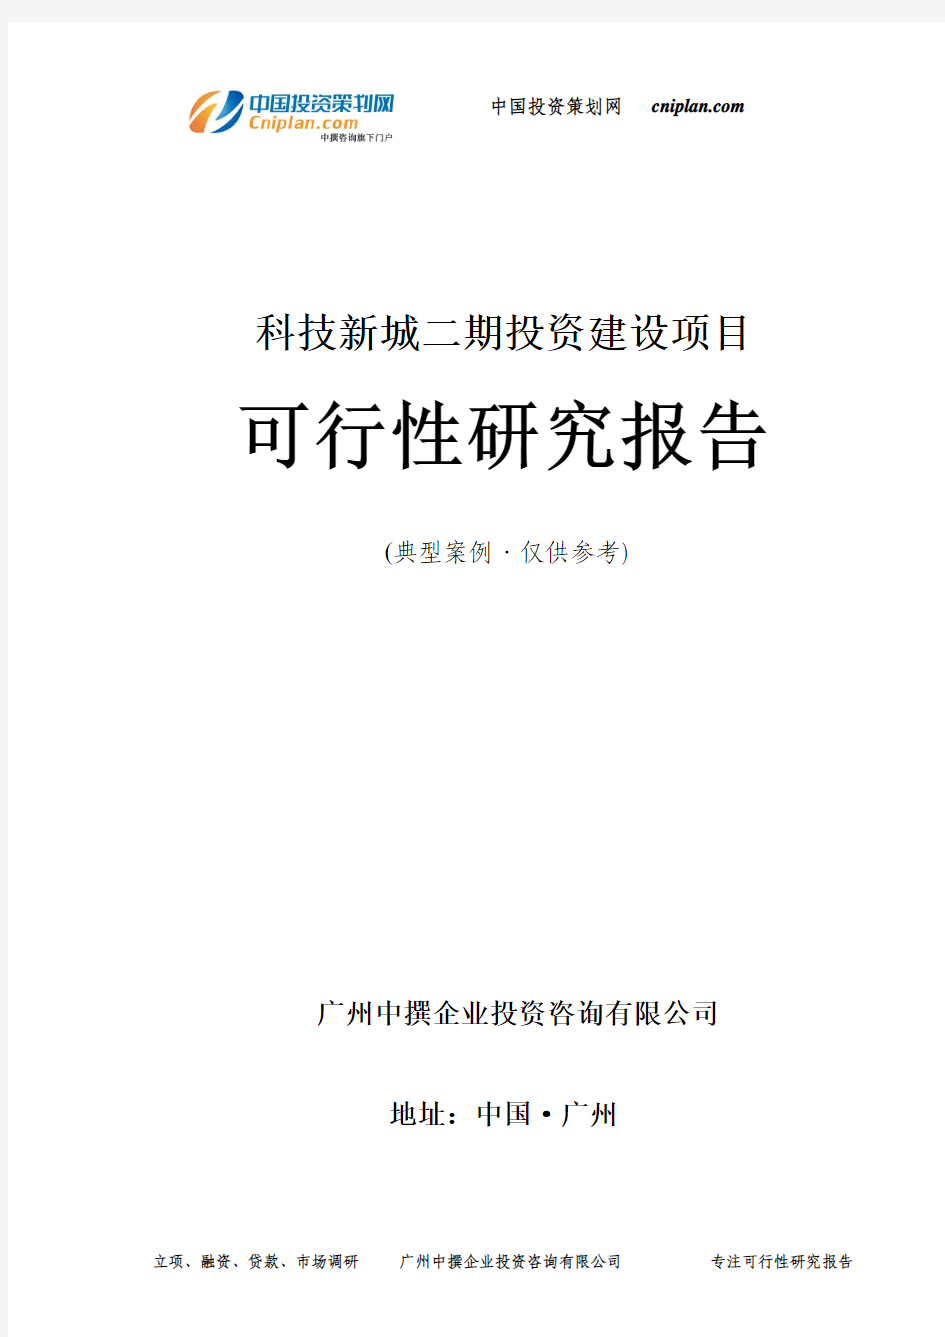 科技新城二期投资建设项目可行性研究报告-广州中撰咨询